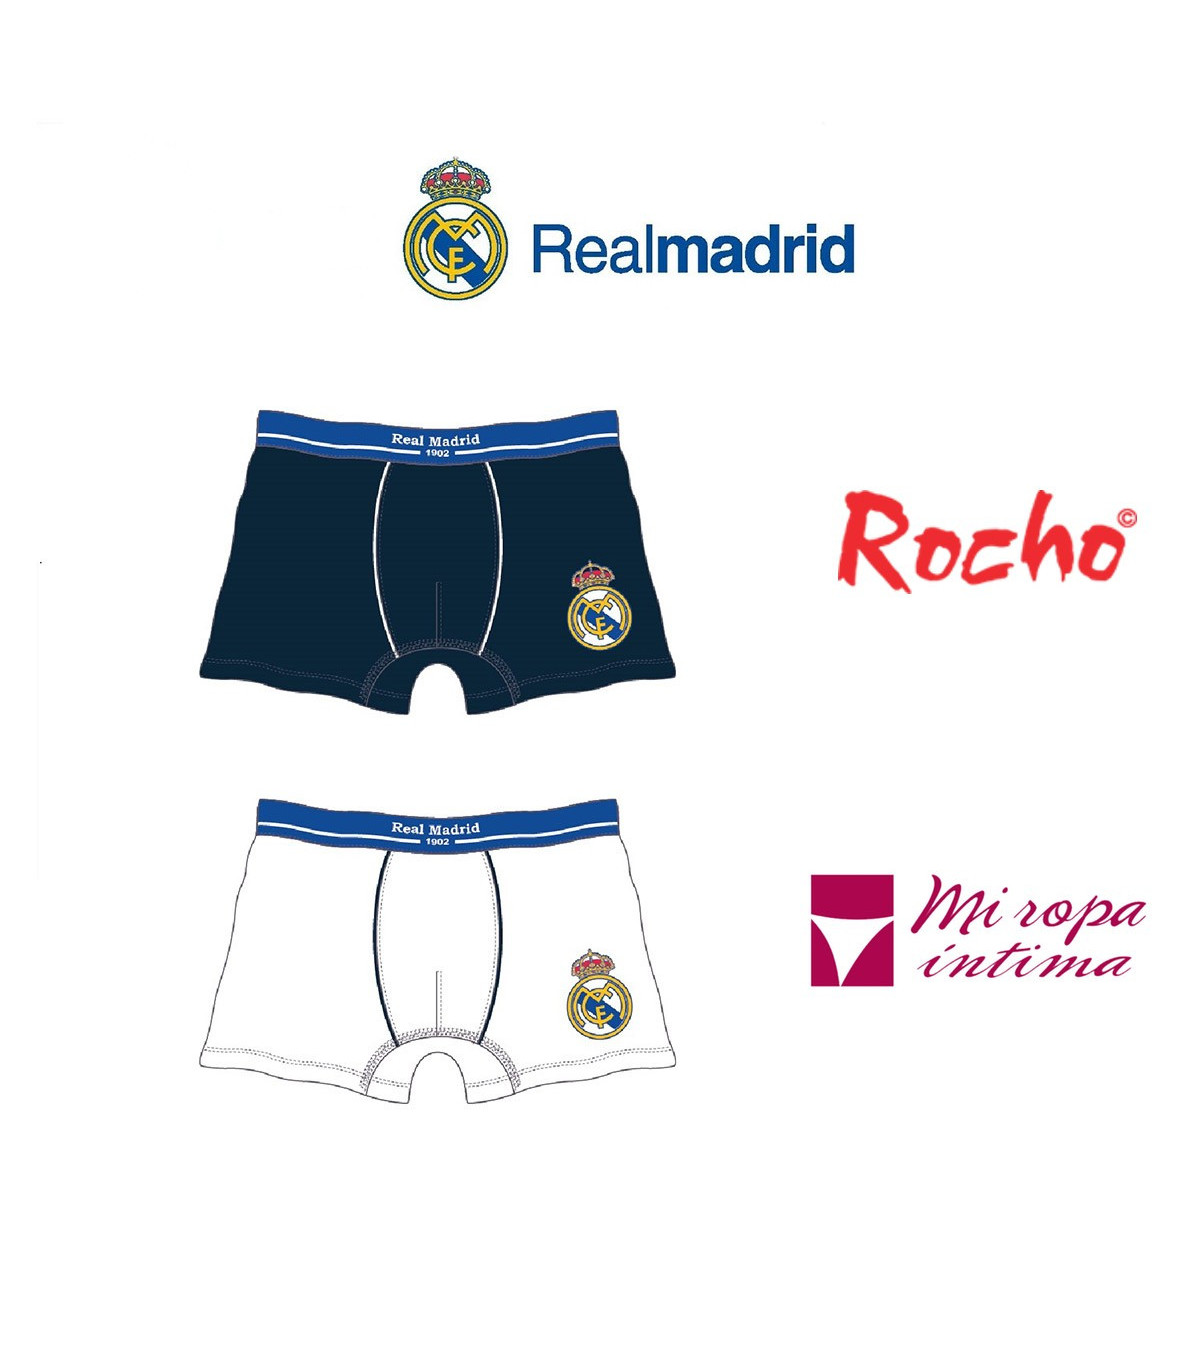 Pack-2 Boxer de Niño Real Madrid Producto Oficial ROCHO mod-601N de venta  online donde comprar desde casa al mejor precio